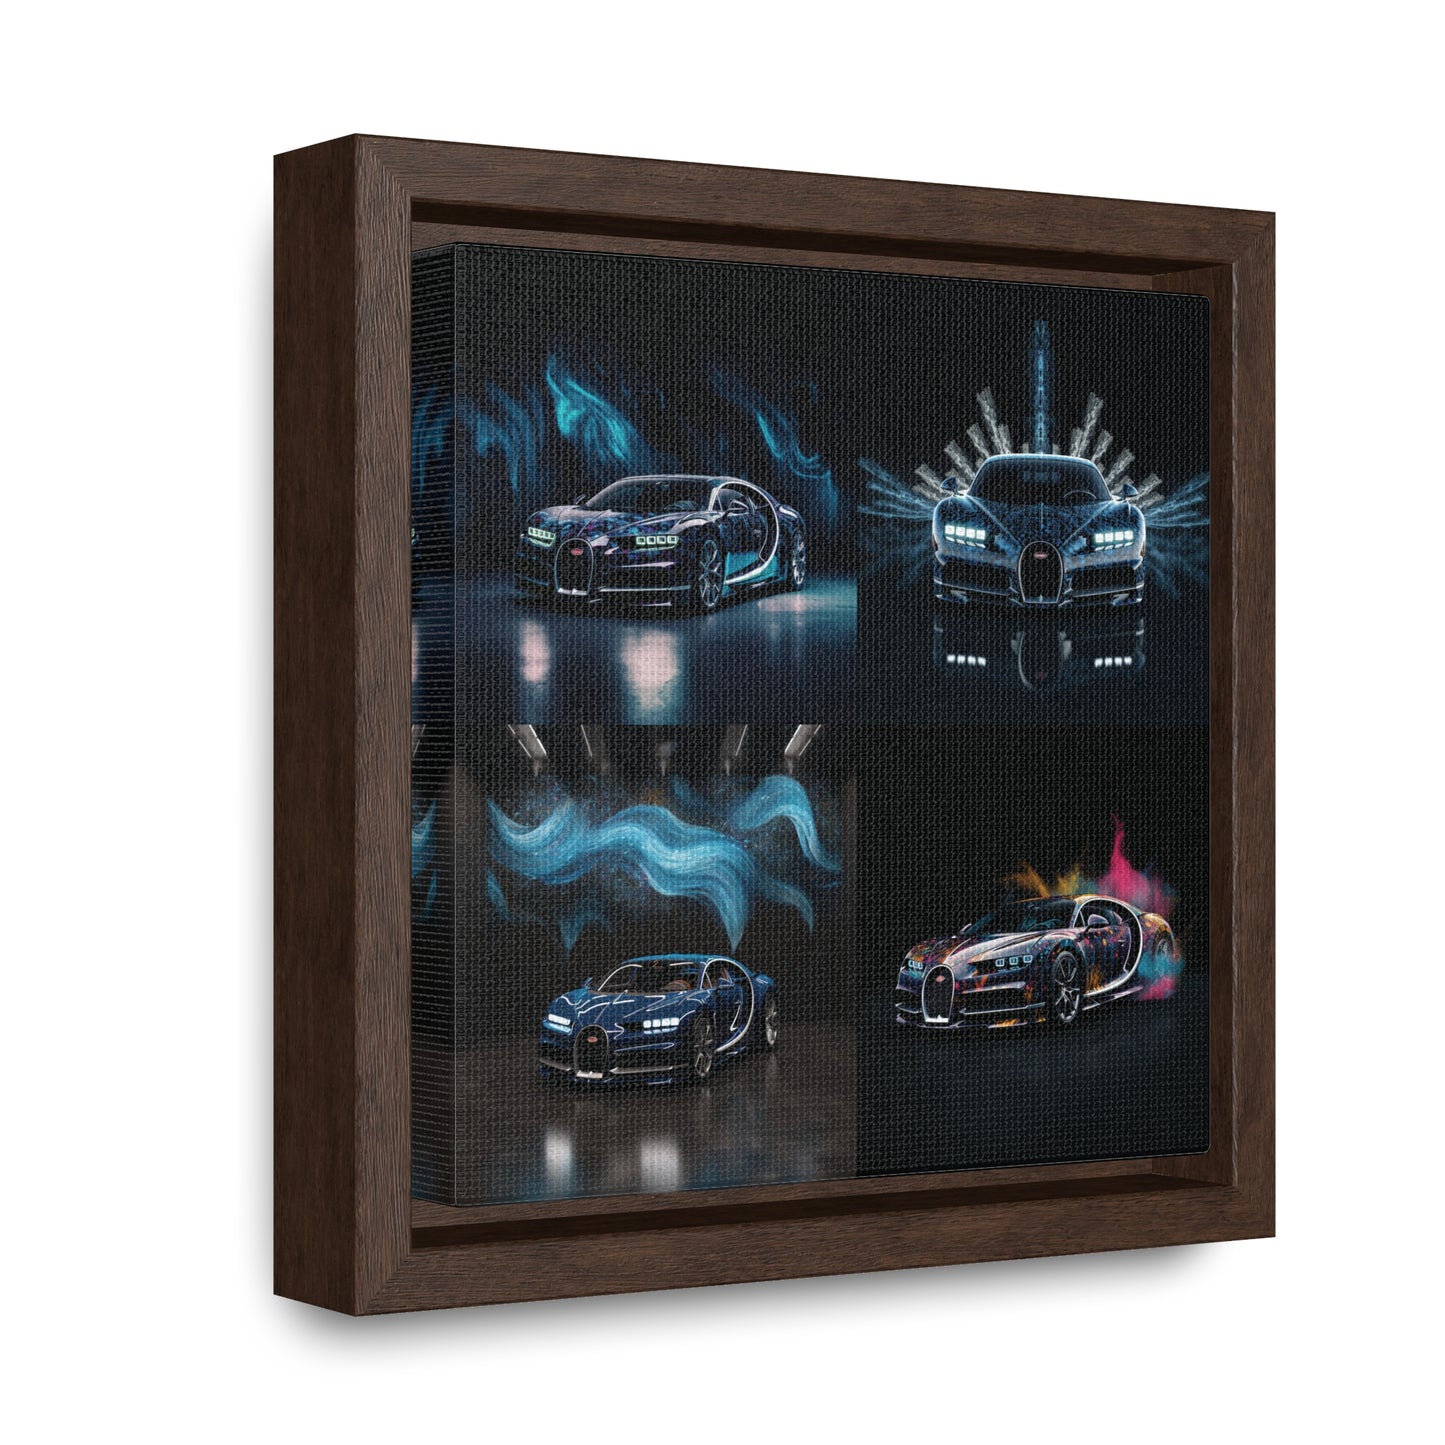 Gallery Canvas Wraps, Square Frame Hyper Bugatti 5